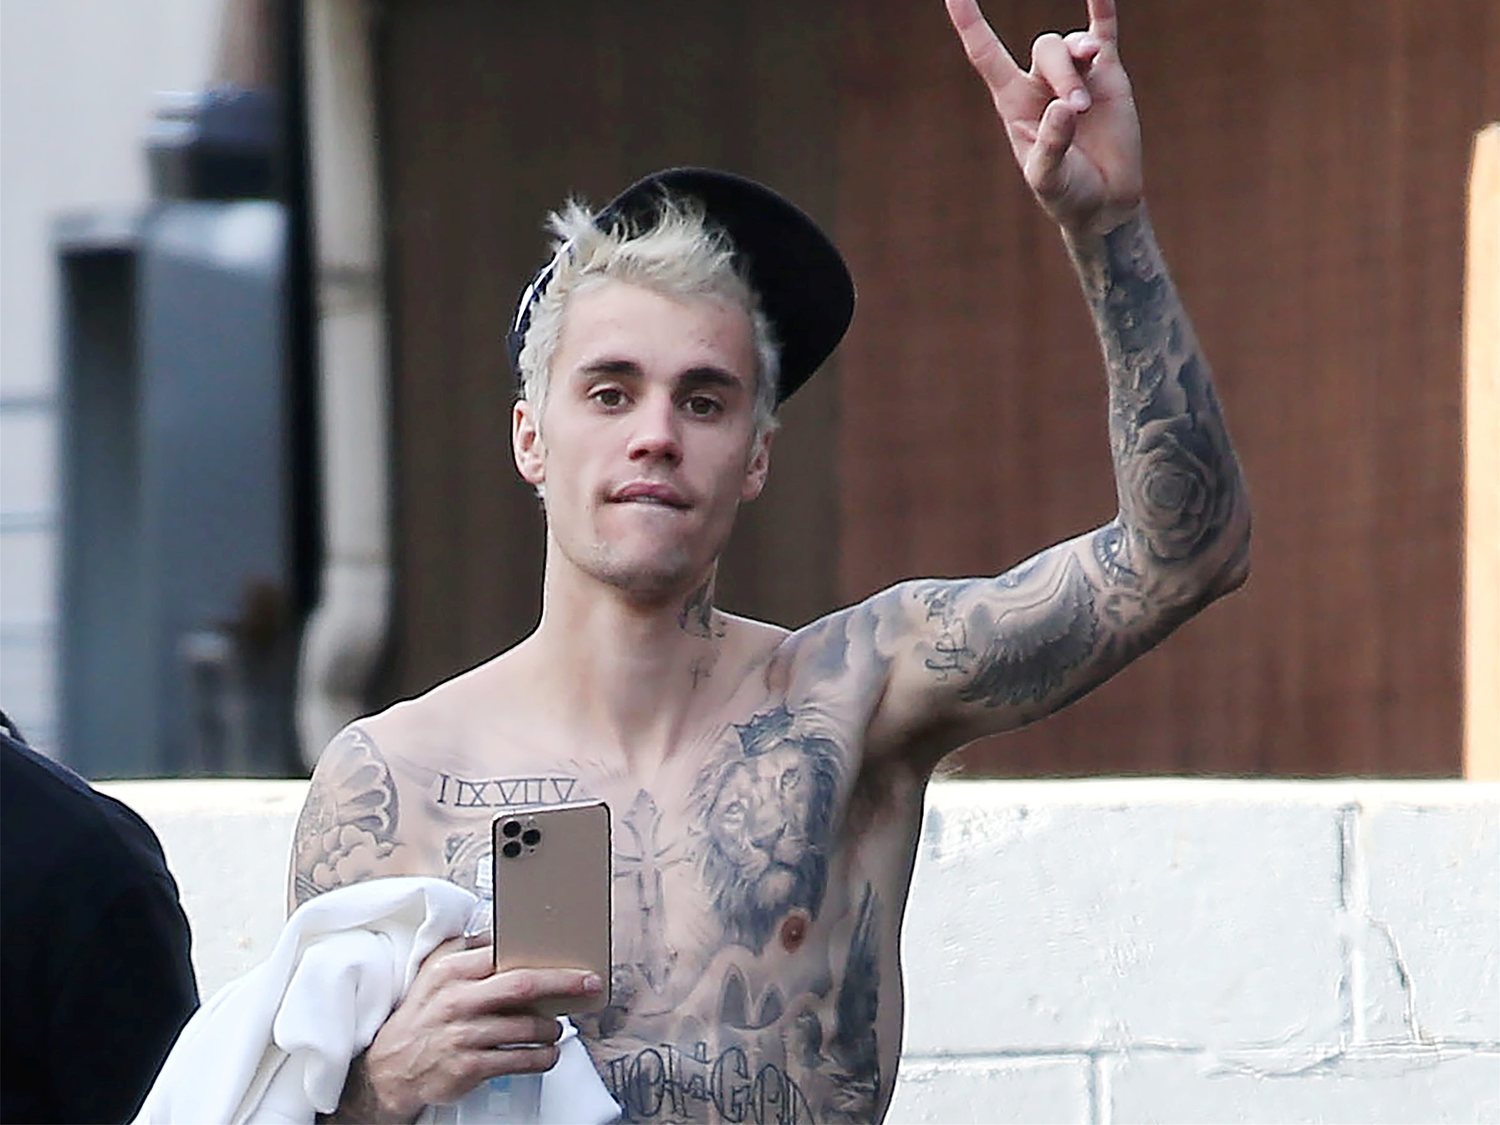 Justin Bieber confiesa que sufre la enfermedad de Lyme: "Creían que me drogaba"